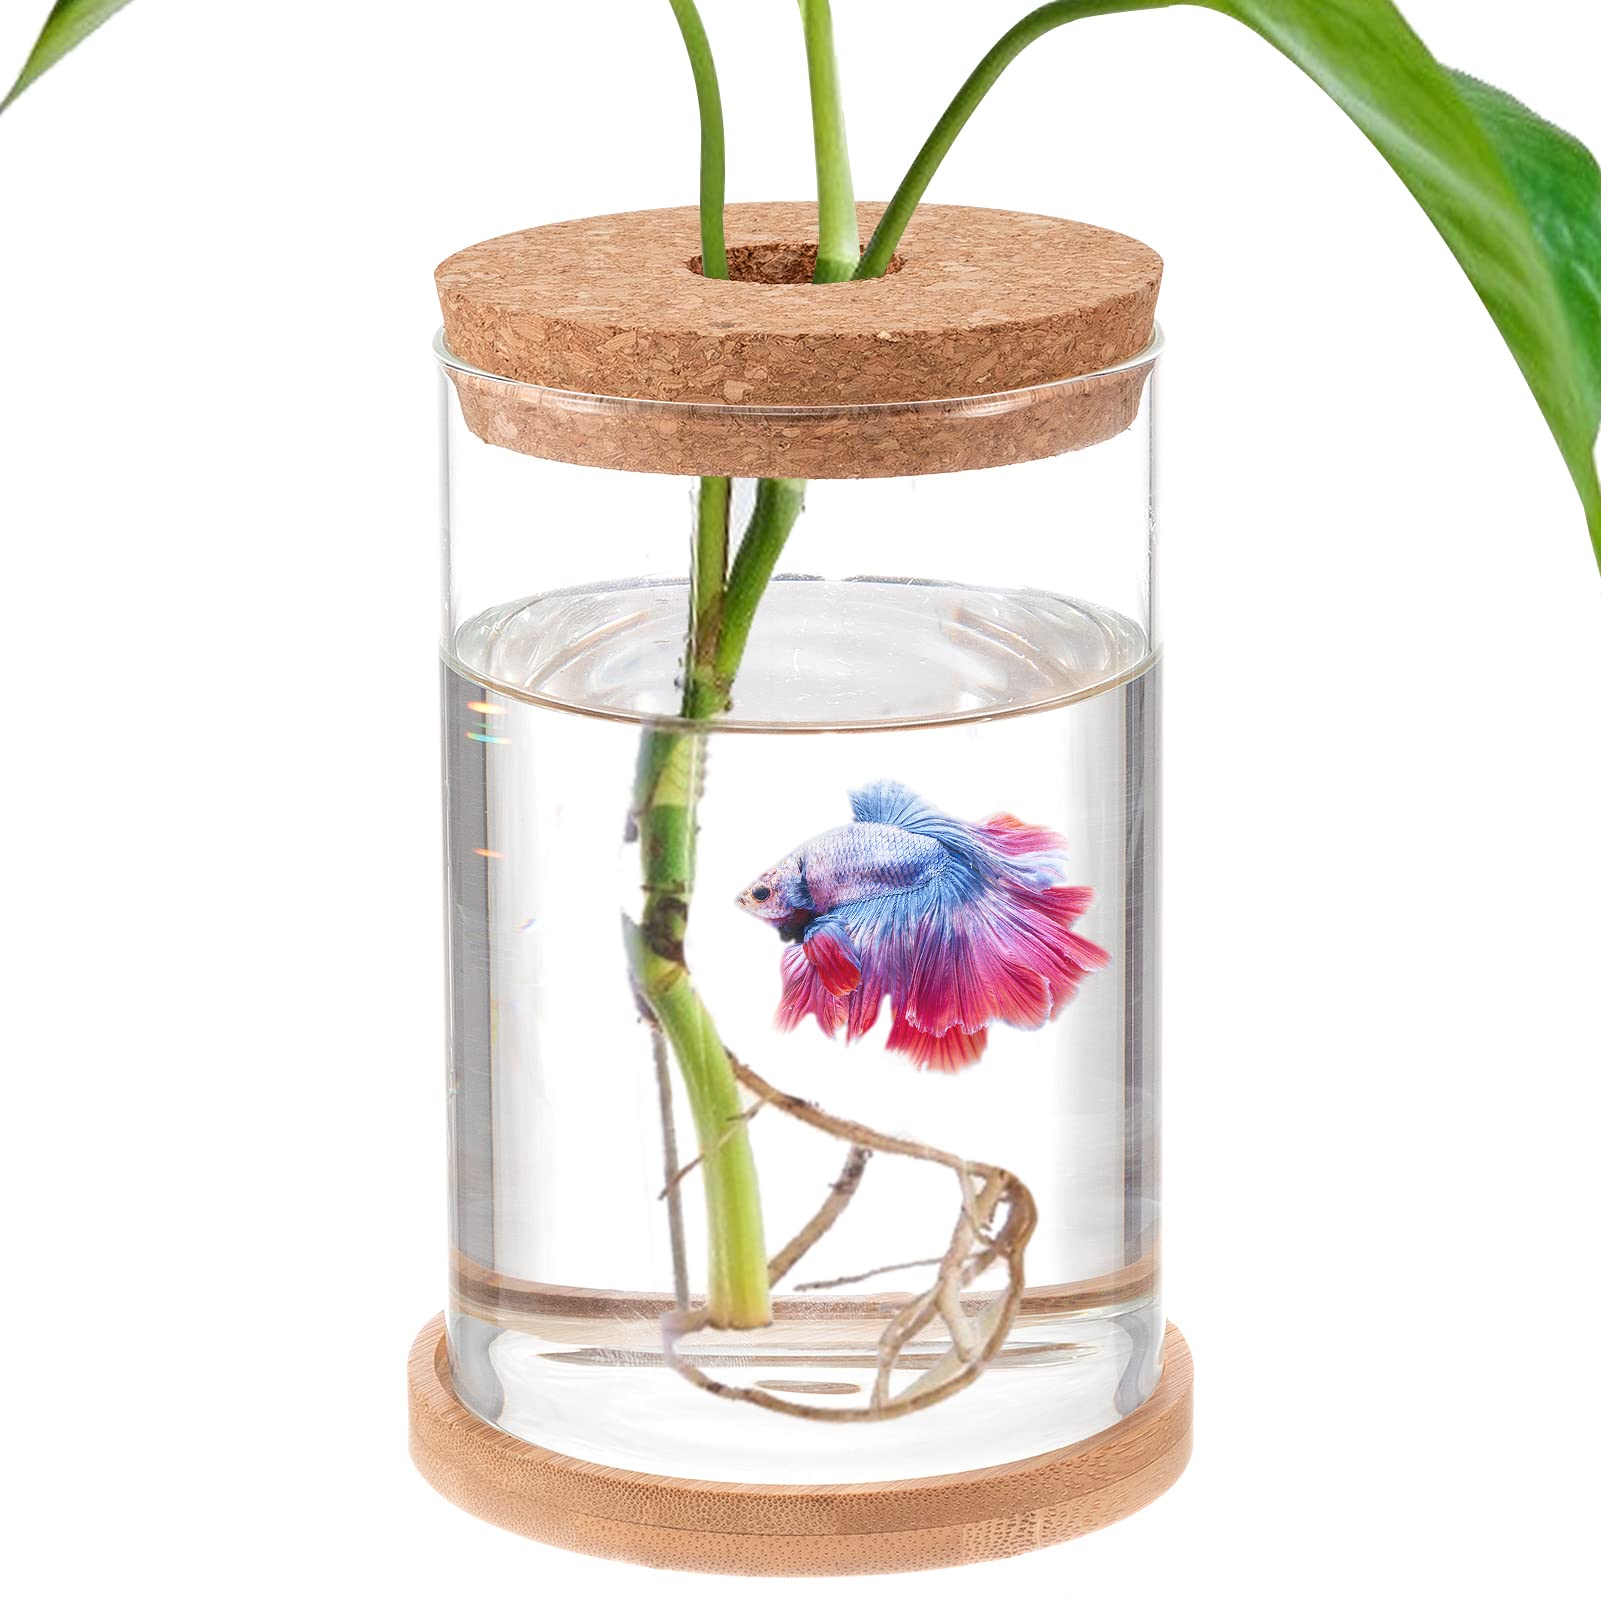 Mini BowlsHeading: Mini Bowls – Betta Fish Tank and Aquaponic Plant Terrarium